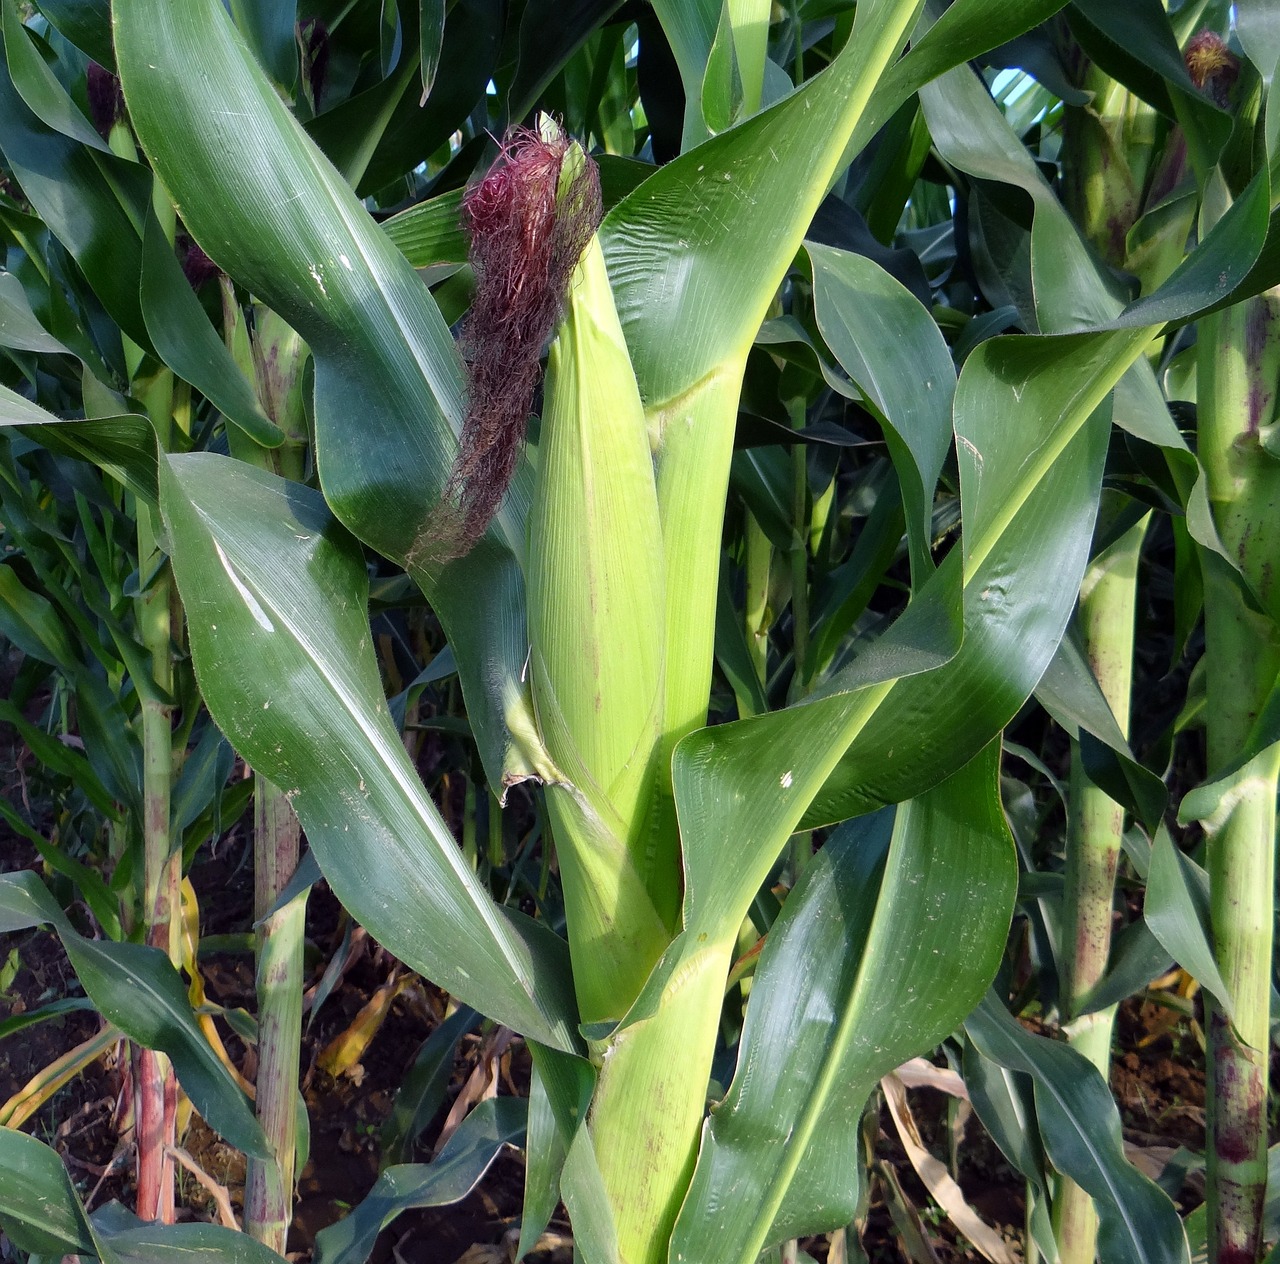 Kukurydza gnieciona jako ważne pasmo dla żywienia zwierząt hodowlanych